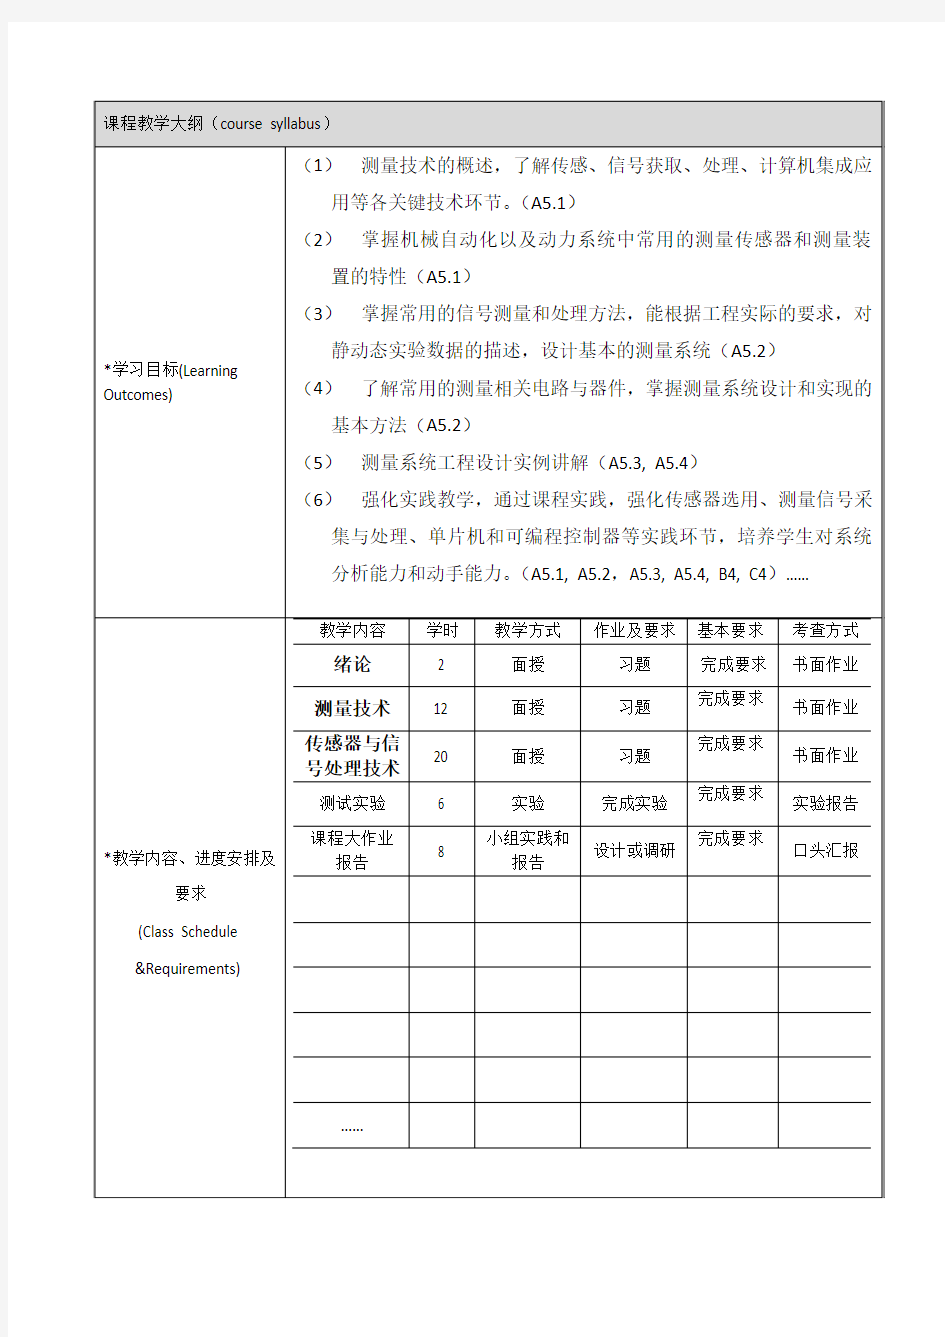 测试原理与技术课程教学大纲-上海交通大学